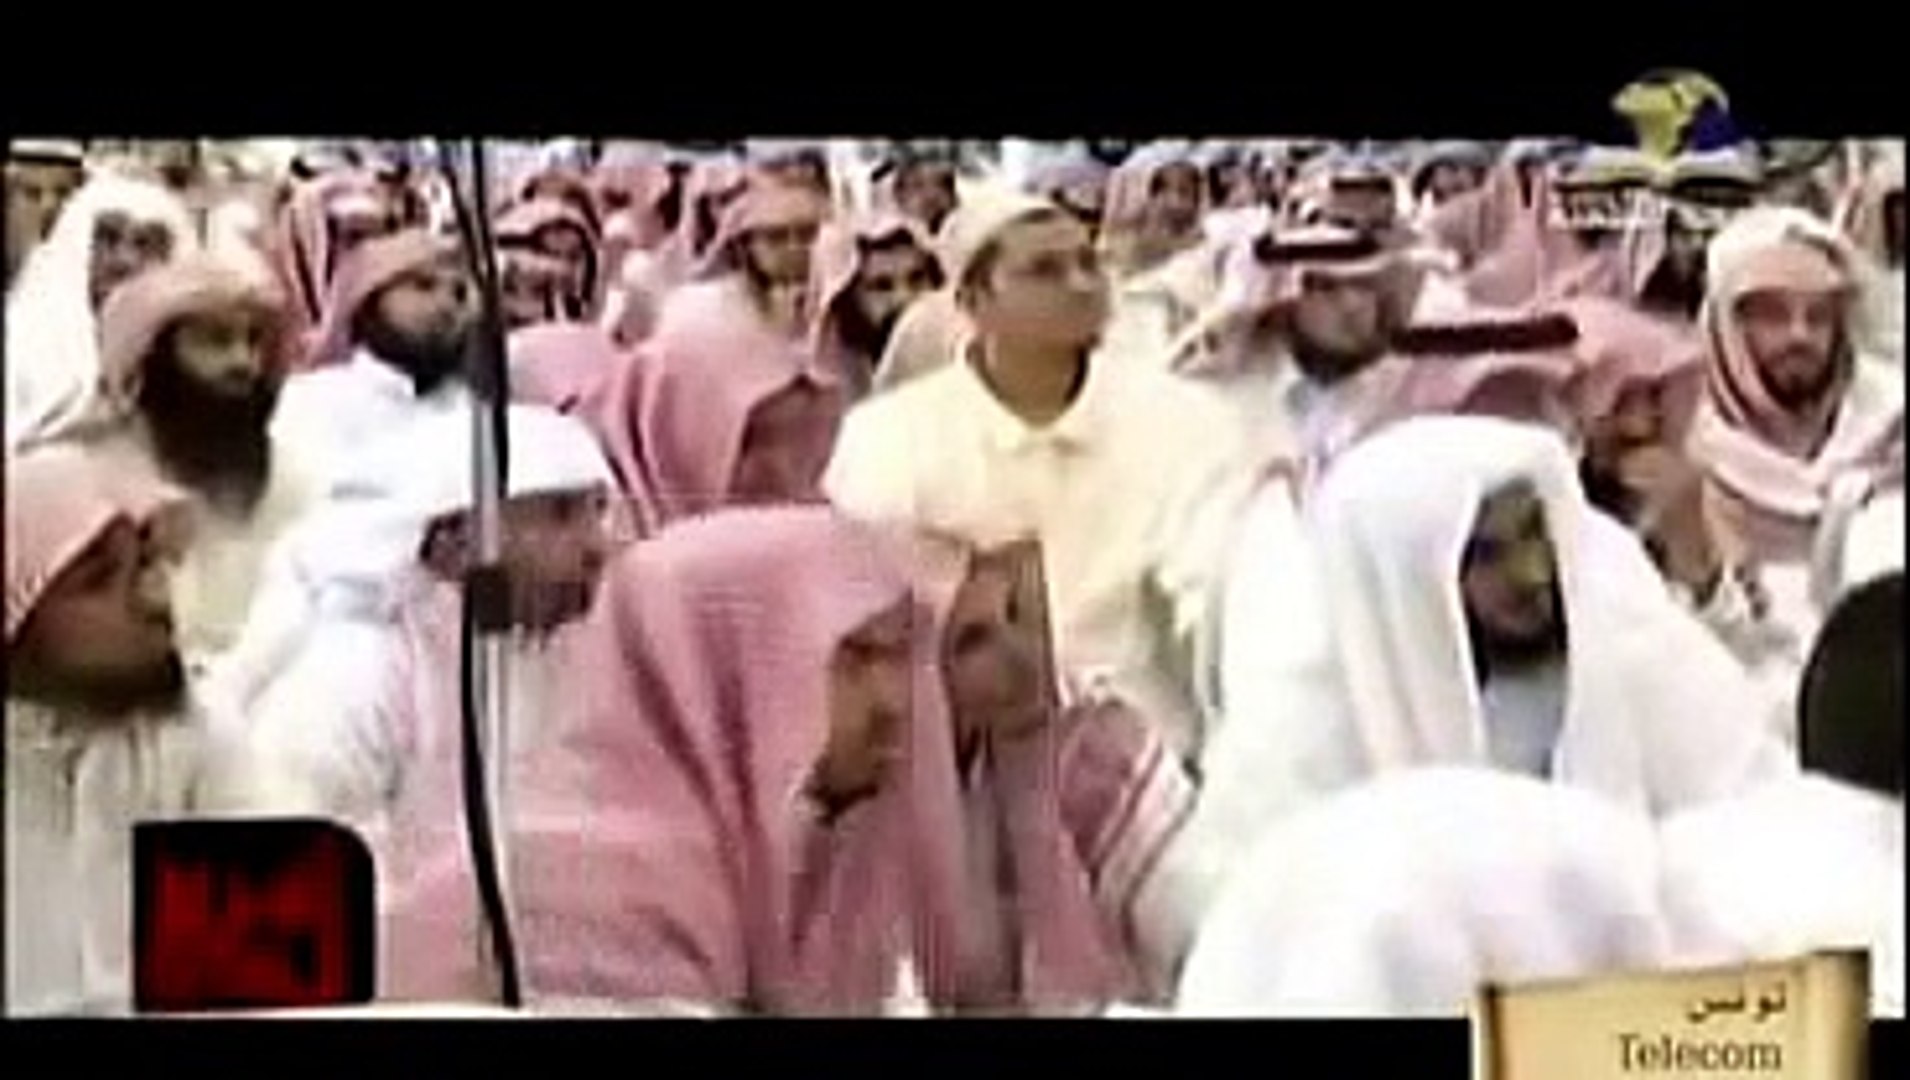 أشراط الساعة الصغرى و الملحمة الكبرى هرمجدون مع الشيخ محمد العريفى - فيديو  Dailymotion